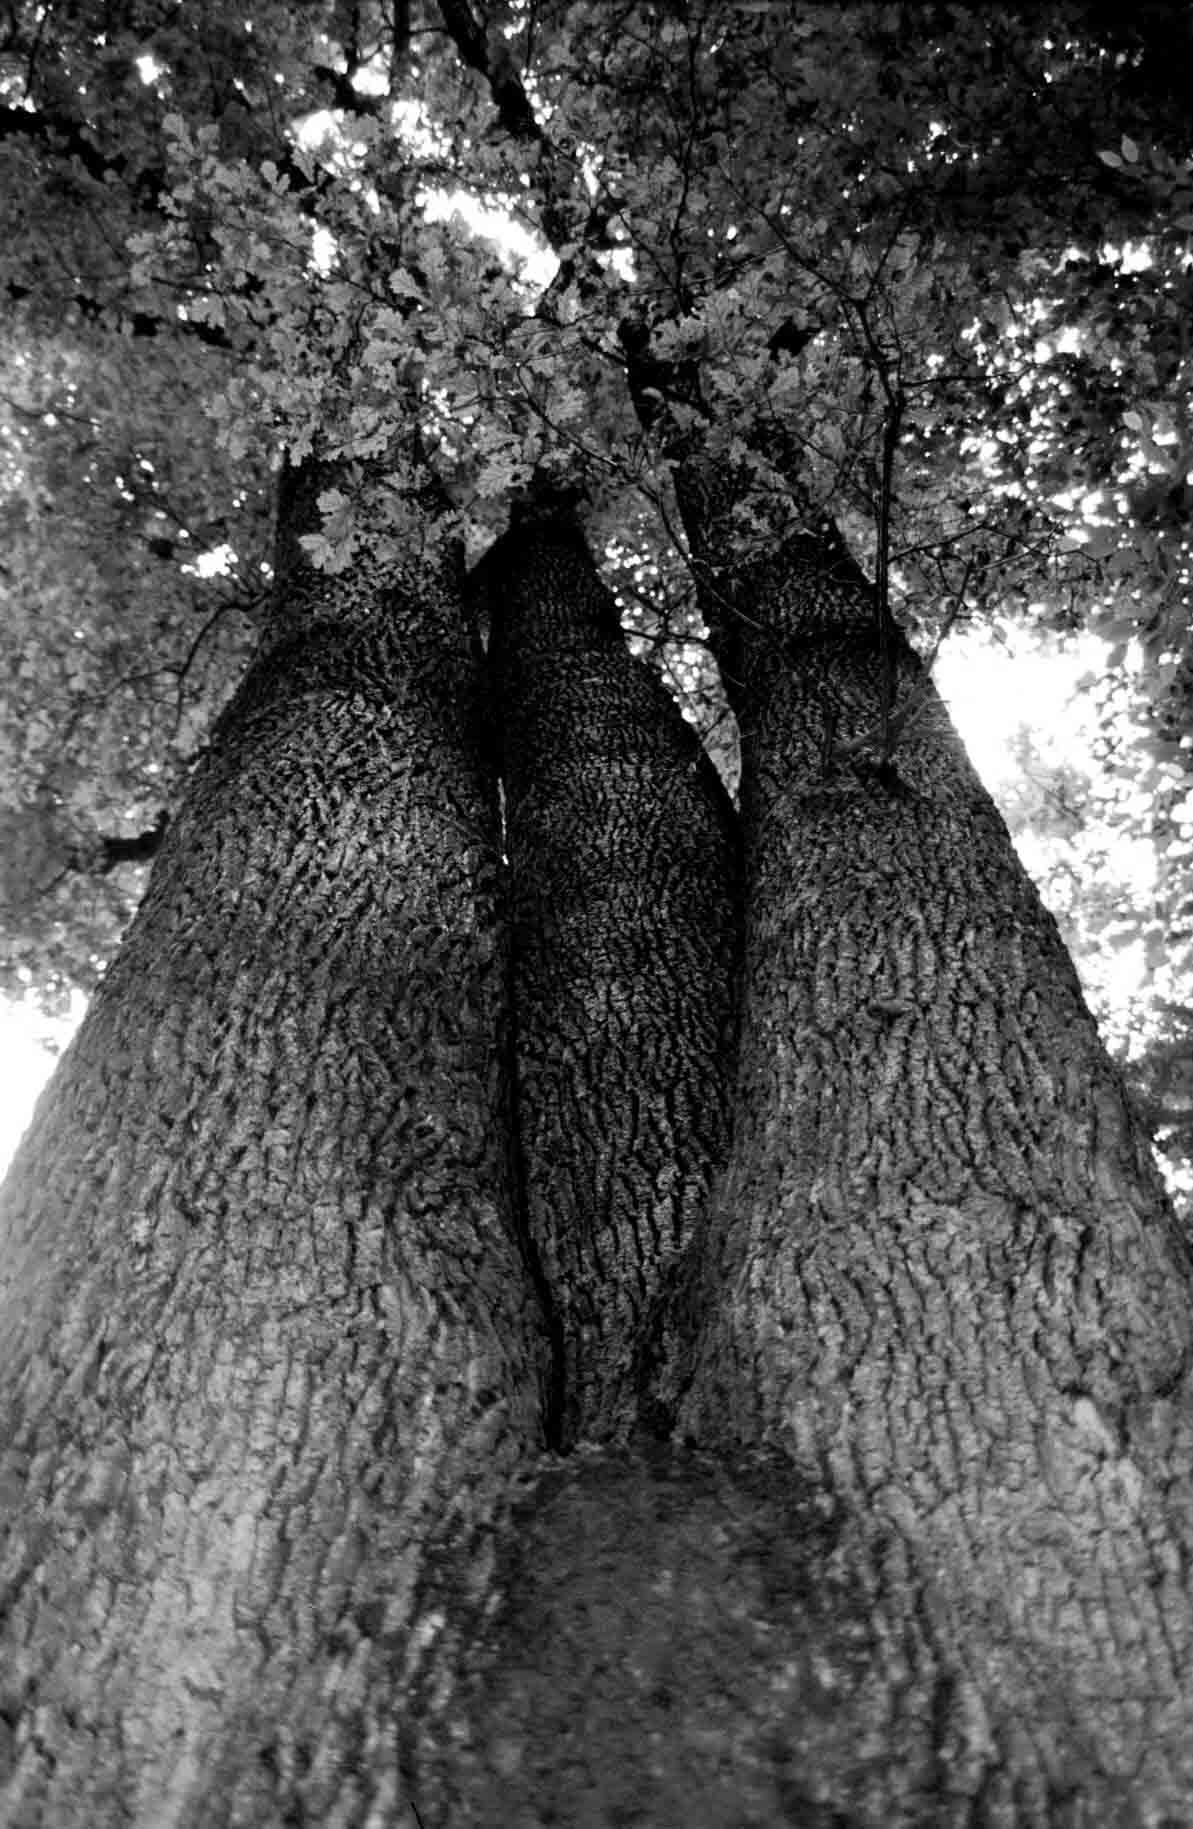 Esemplare secolare di rovere (Quercus petraea), comune nelle aree collinari dell'Astigiano.